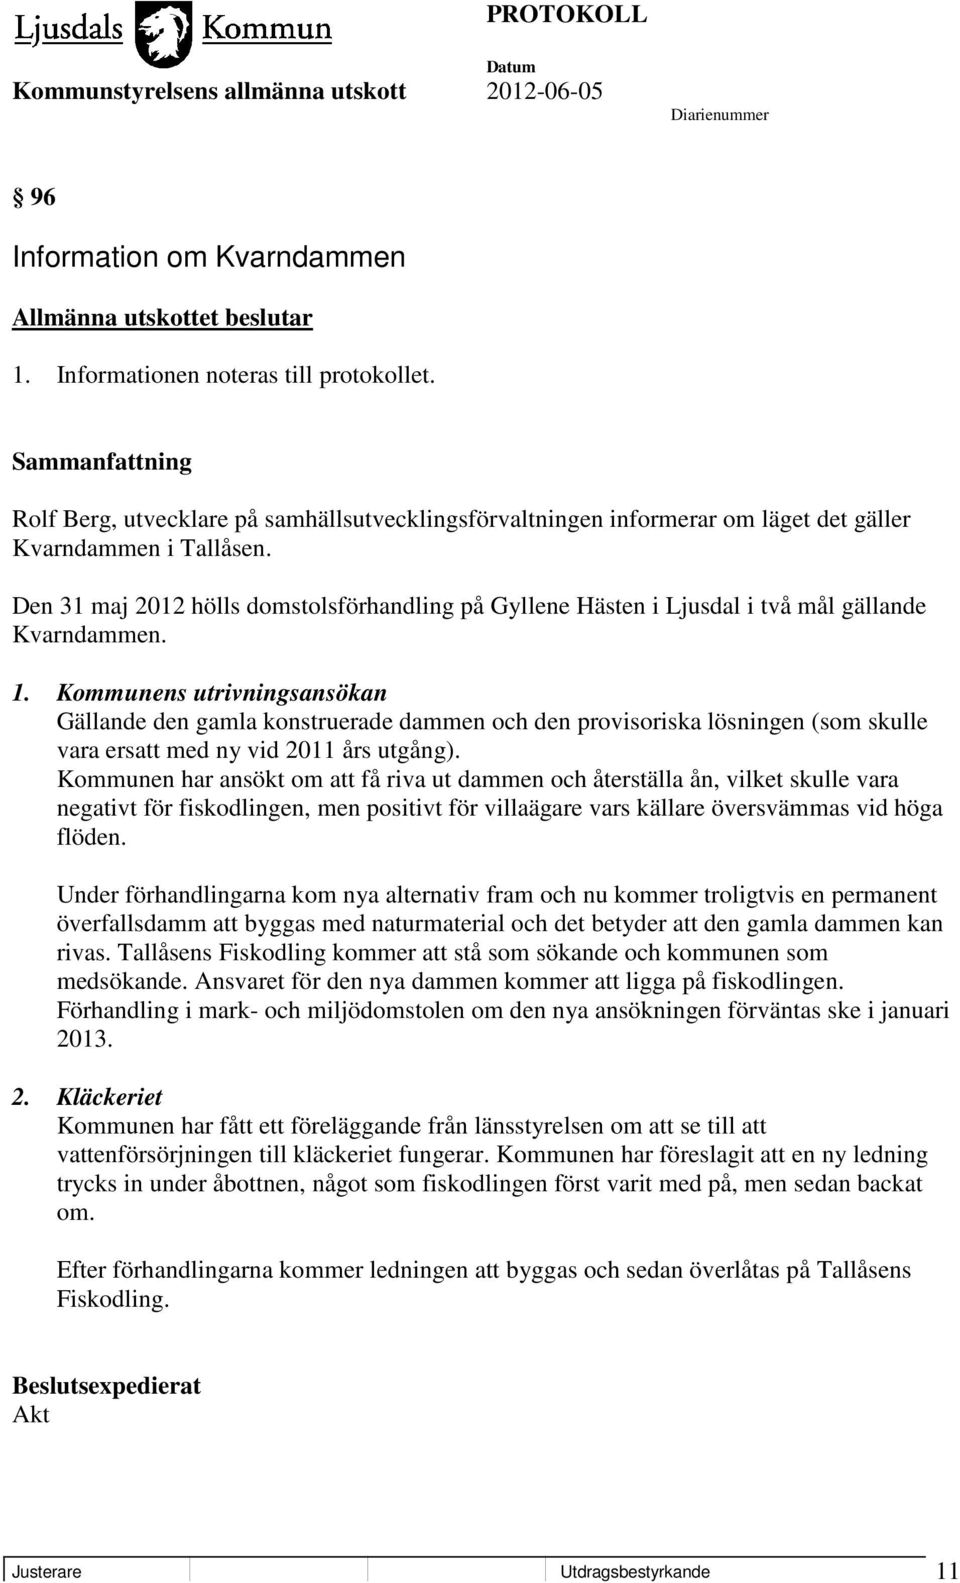 Den 31 maj 2012 hölls domstolsförhandling på Gyllene Hästen i Ljusdal i två mål gällande Kvarndammen. 1.